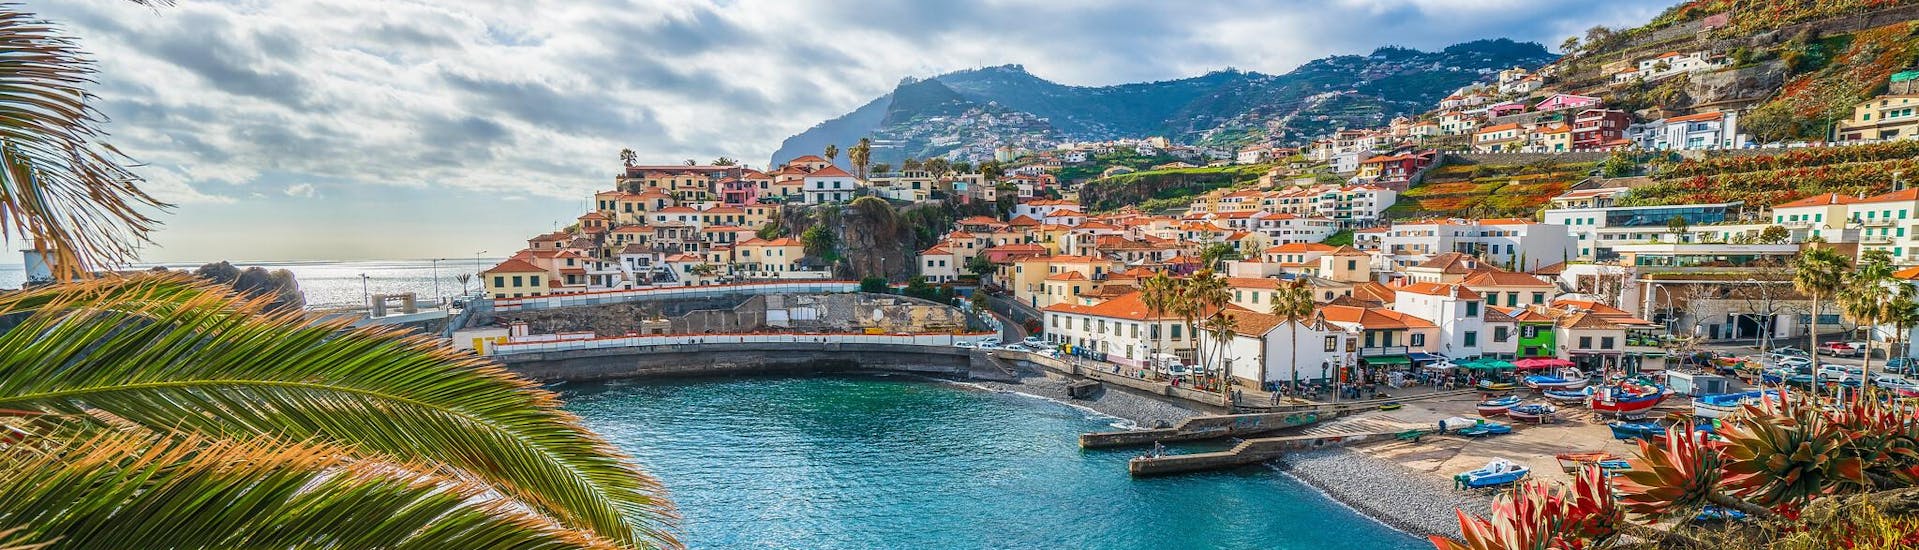 Photo de la côte et des maisons colorées du village de Funchal